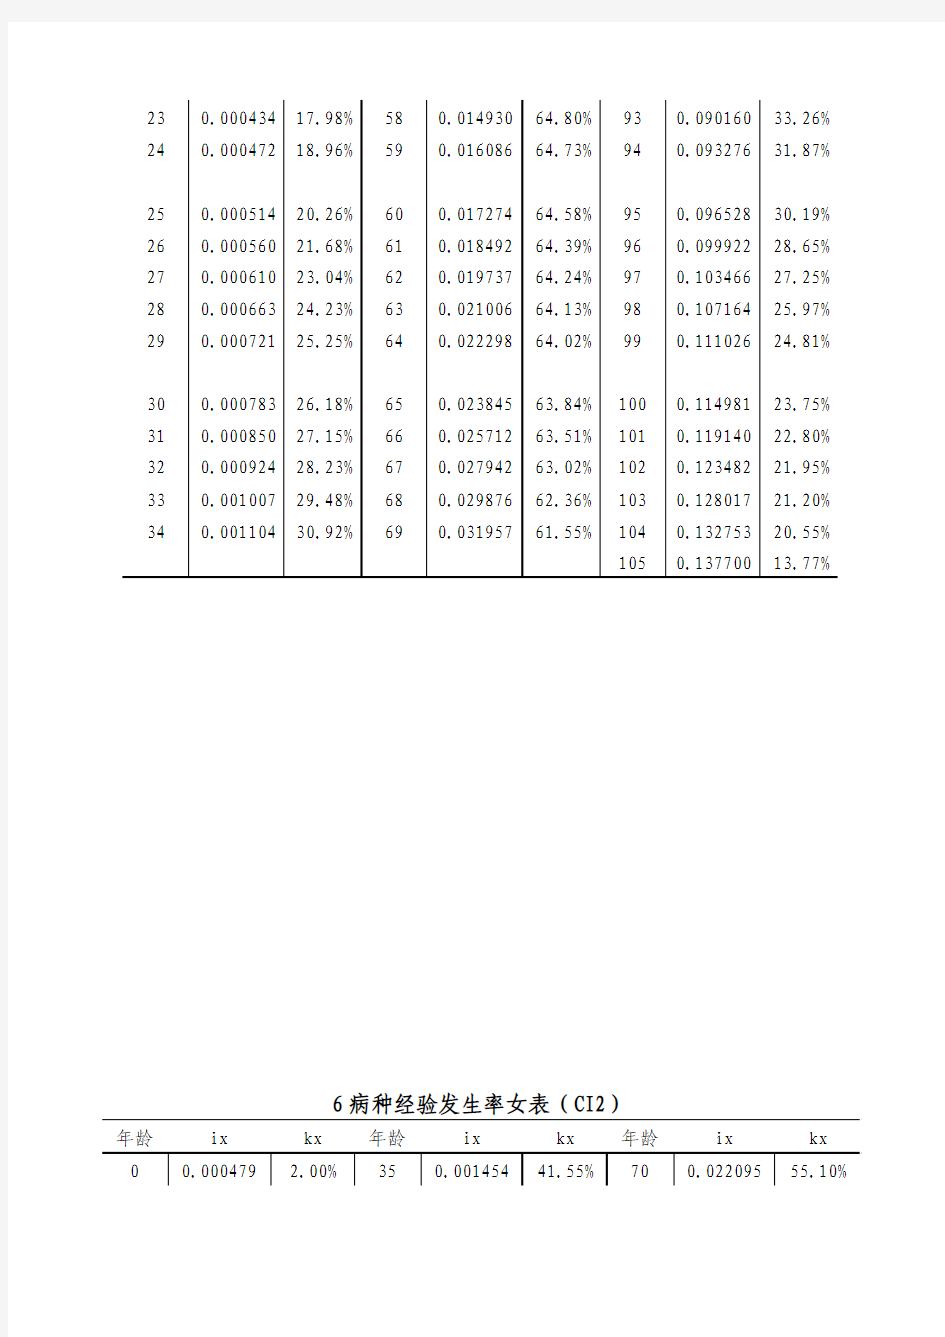 中国人身保险业重大疾病经验发生率2006-2010